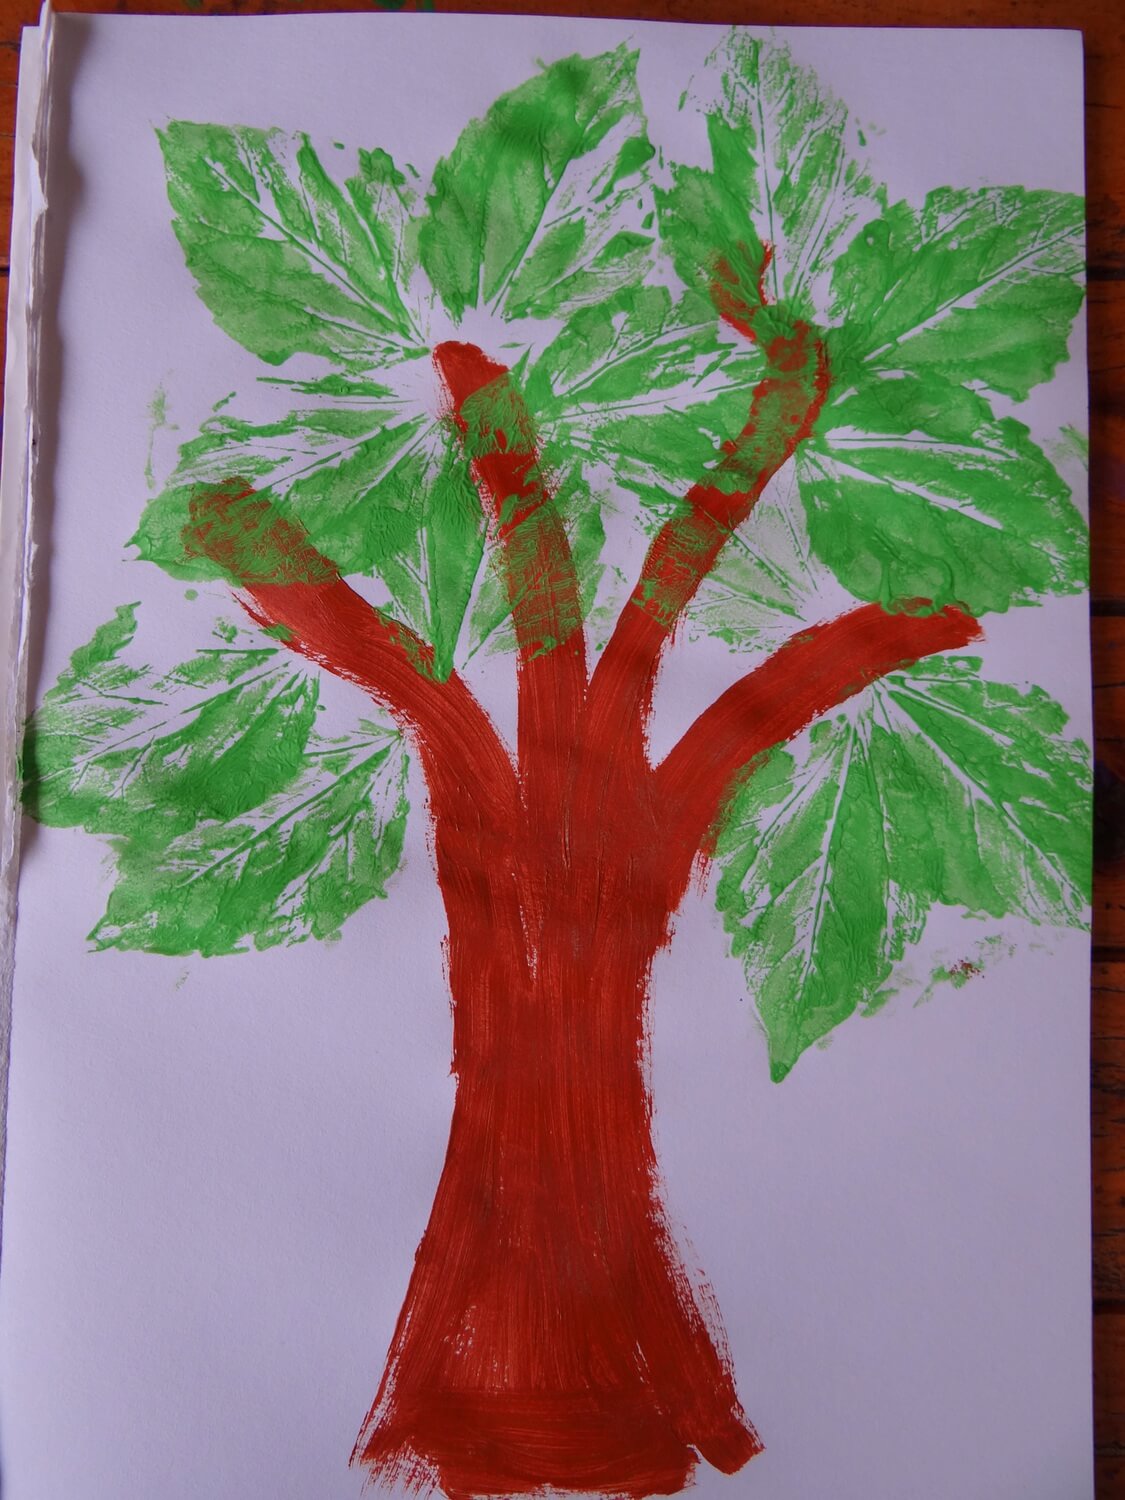 Fun & Simple Tree Painting Art Idea Using Leaf Print